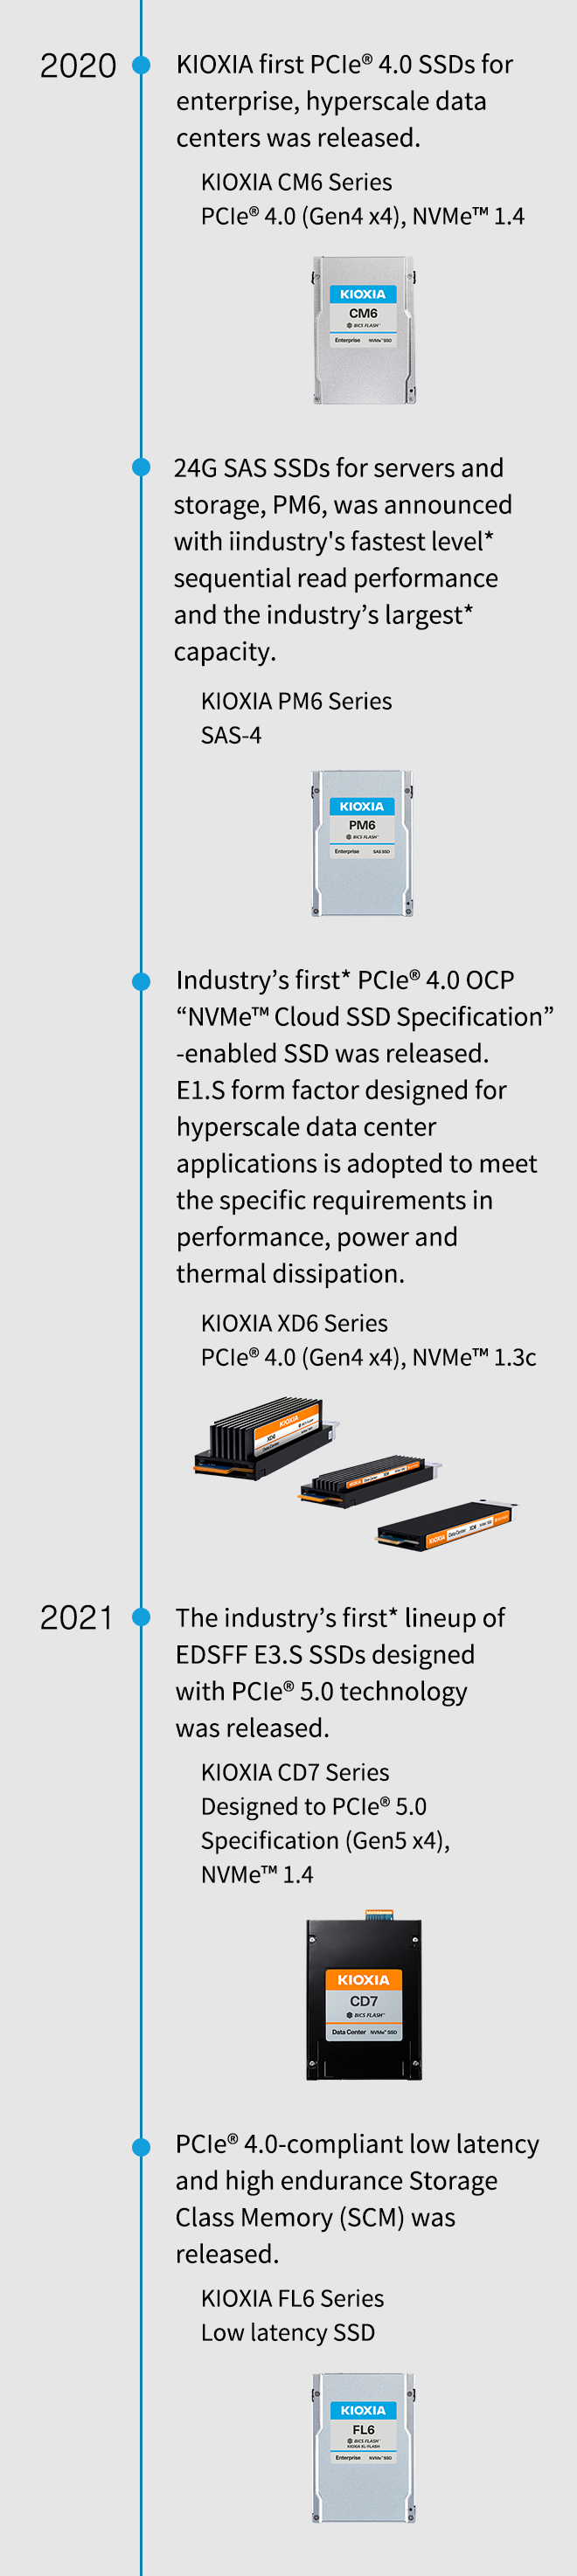 2020. KIOXIA, kurumlar için ilk PCIe® 4.0 SSD'ler, hiper ölçekli veri merkezleri piyasaya sürüldü. KIOXIA CM6 Serisi PCIe® 4.0 (Gen4 x4), NVMe™ 1.4. Sunucular ve depolama için 24G SAS SSD'ler PM6, endüstrinin en hızlı* sıralı okuma performansına ve endüstrinin en büyük* kapasitesine sahip olarak duyuruldu. KIOHIA PM6 Serisi SAS-4. Endüstrinin ilk* PCIe® 4.0 OCP "NVMe™ Cloud SSD Spesifikasyonu" özellikli SSD piyasaya sürüldü. Hiper ölçekli veri merkezi uygulamaları için tasarlanmış E1.S form faktörü, performans, güç ve termal dağılıma ilişkin özel gereksinimleri karşılamak üzere benimsenmiştir. KIOXIA XD6 Serisi PCIe® 4.0 (Gen4 x4), NVMe™ 1.3c. 2021. PCIe® 5.0 teknolojisi ile tasarlanan endüstrinin ilk* EDSFF E3.S SSD serisi piyasaya sürüldü. KIOXIA CD7 Serisi PCIe® 5.0 Spesifikasyonuna (Gen5 x4), NVMe™ 1.4'e Göre Tasarlanmıştır. PCIe® 4.0 uyumlu düşük gecikmeli ve yüksek dayanıklılığa sahip Depolama Sınıfı Bellek (SCM) piyasaya sürüldü. KIOXIA FL6 Serisi Düşük Gecikmeli SSD